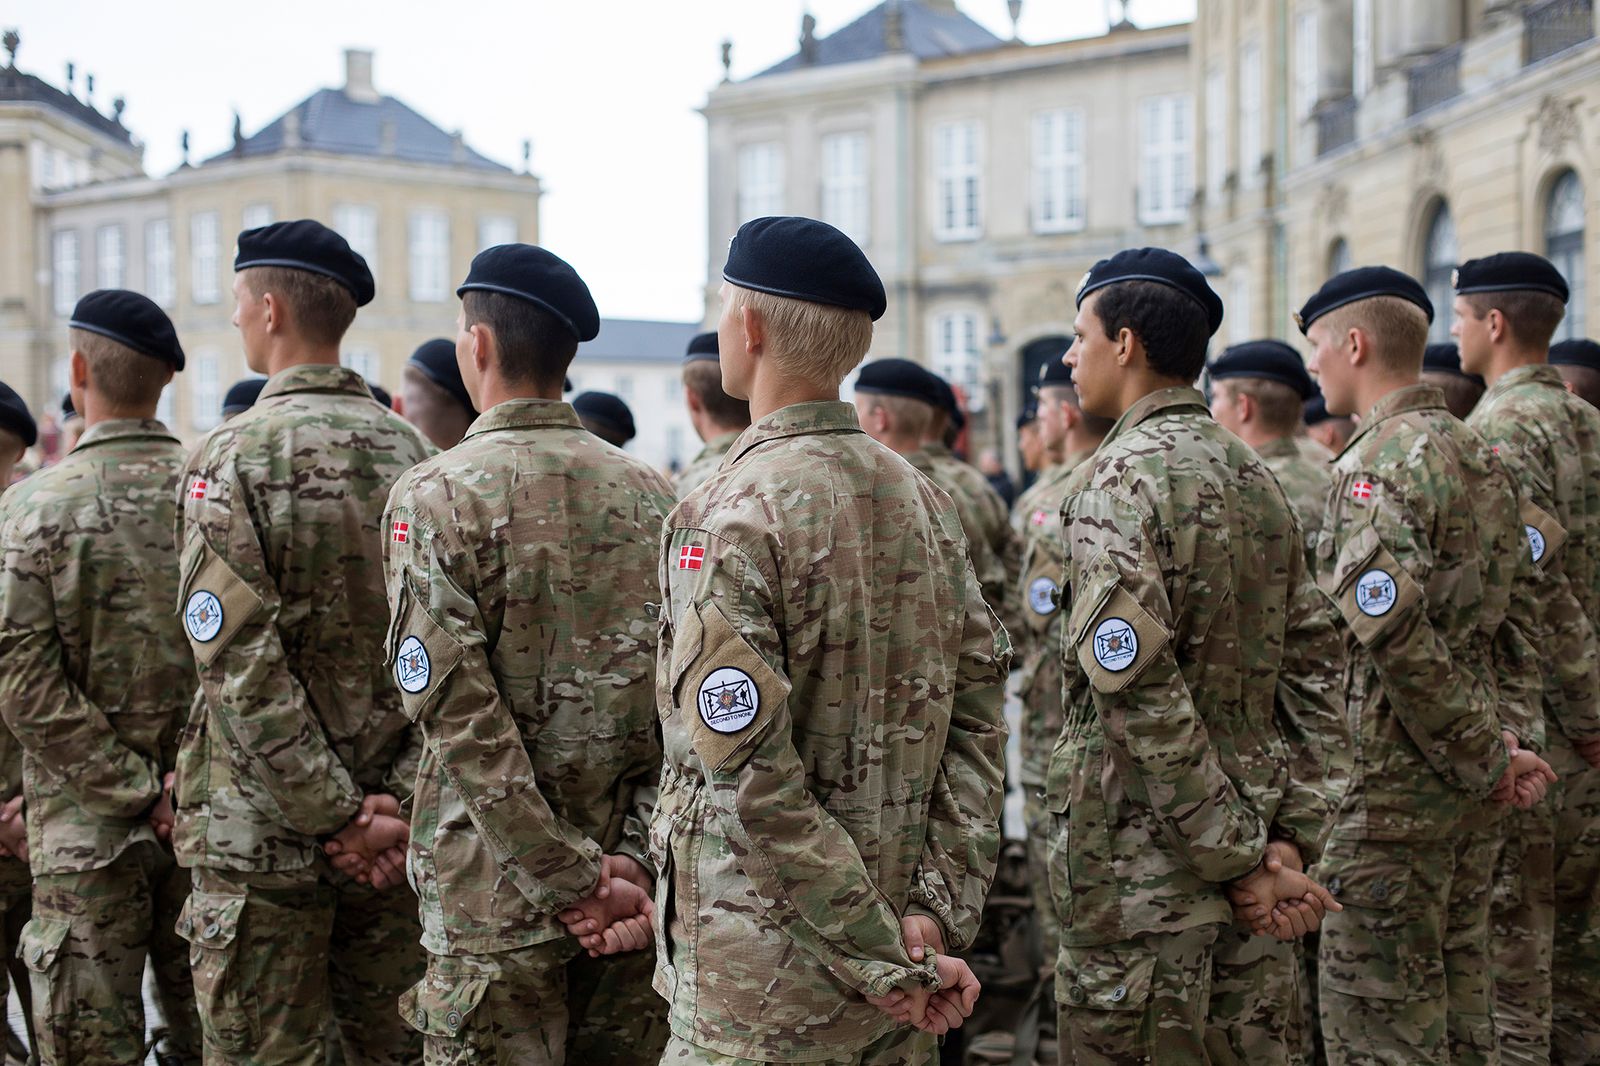 © Filippo Venturi - Troops in formation near the Amaliemborg Royal Palace. Copenhagen, June 7, 2019.